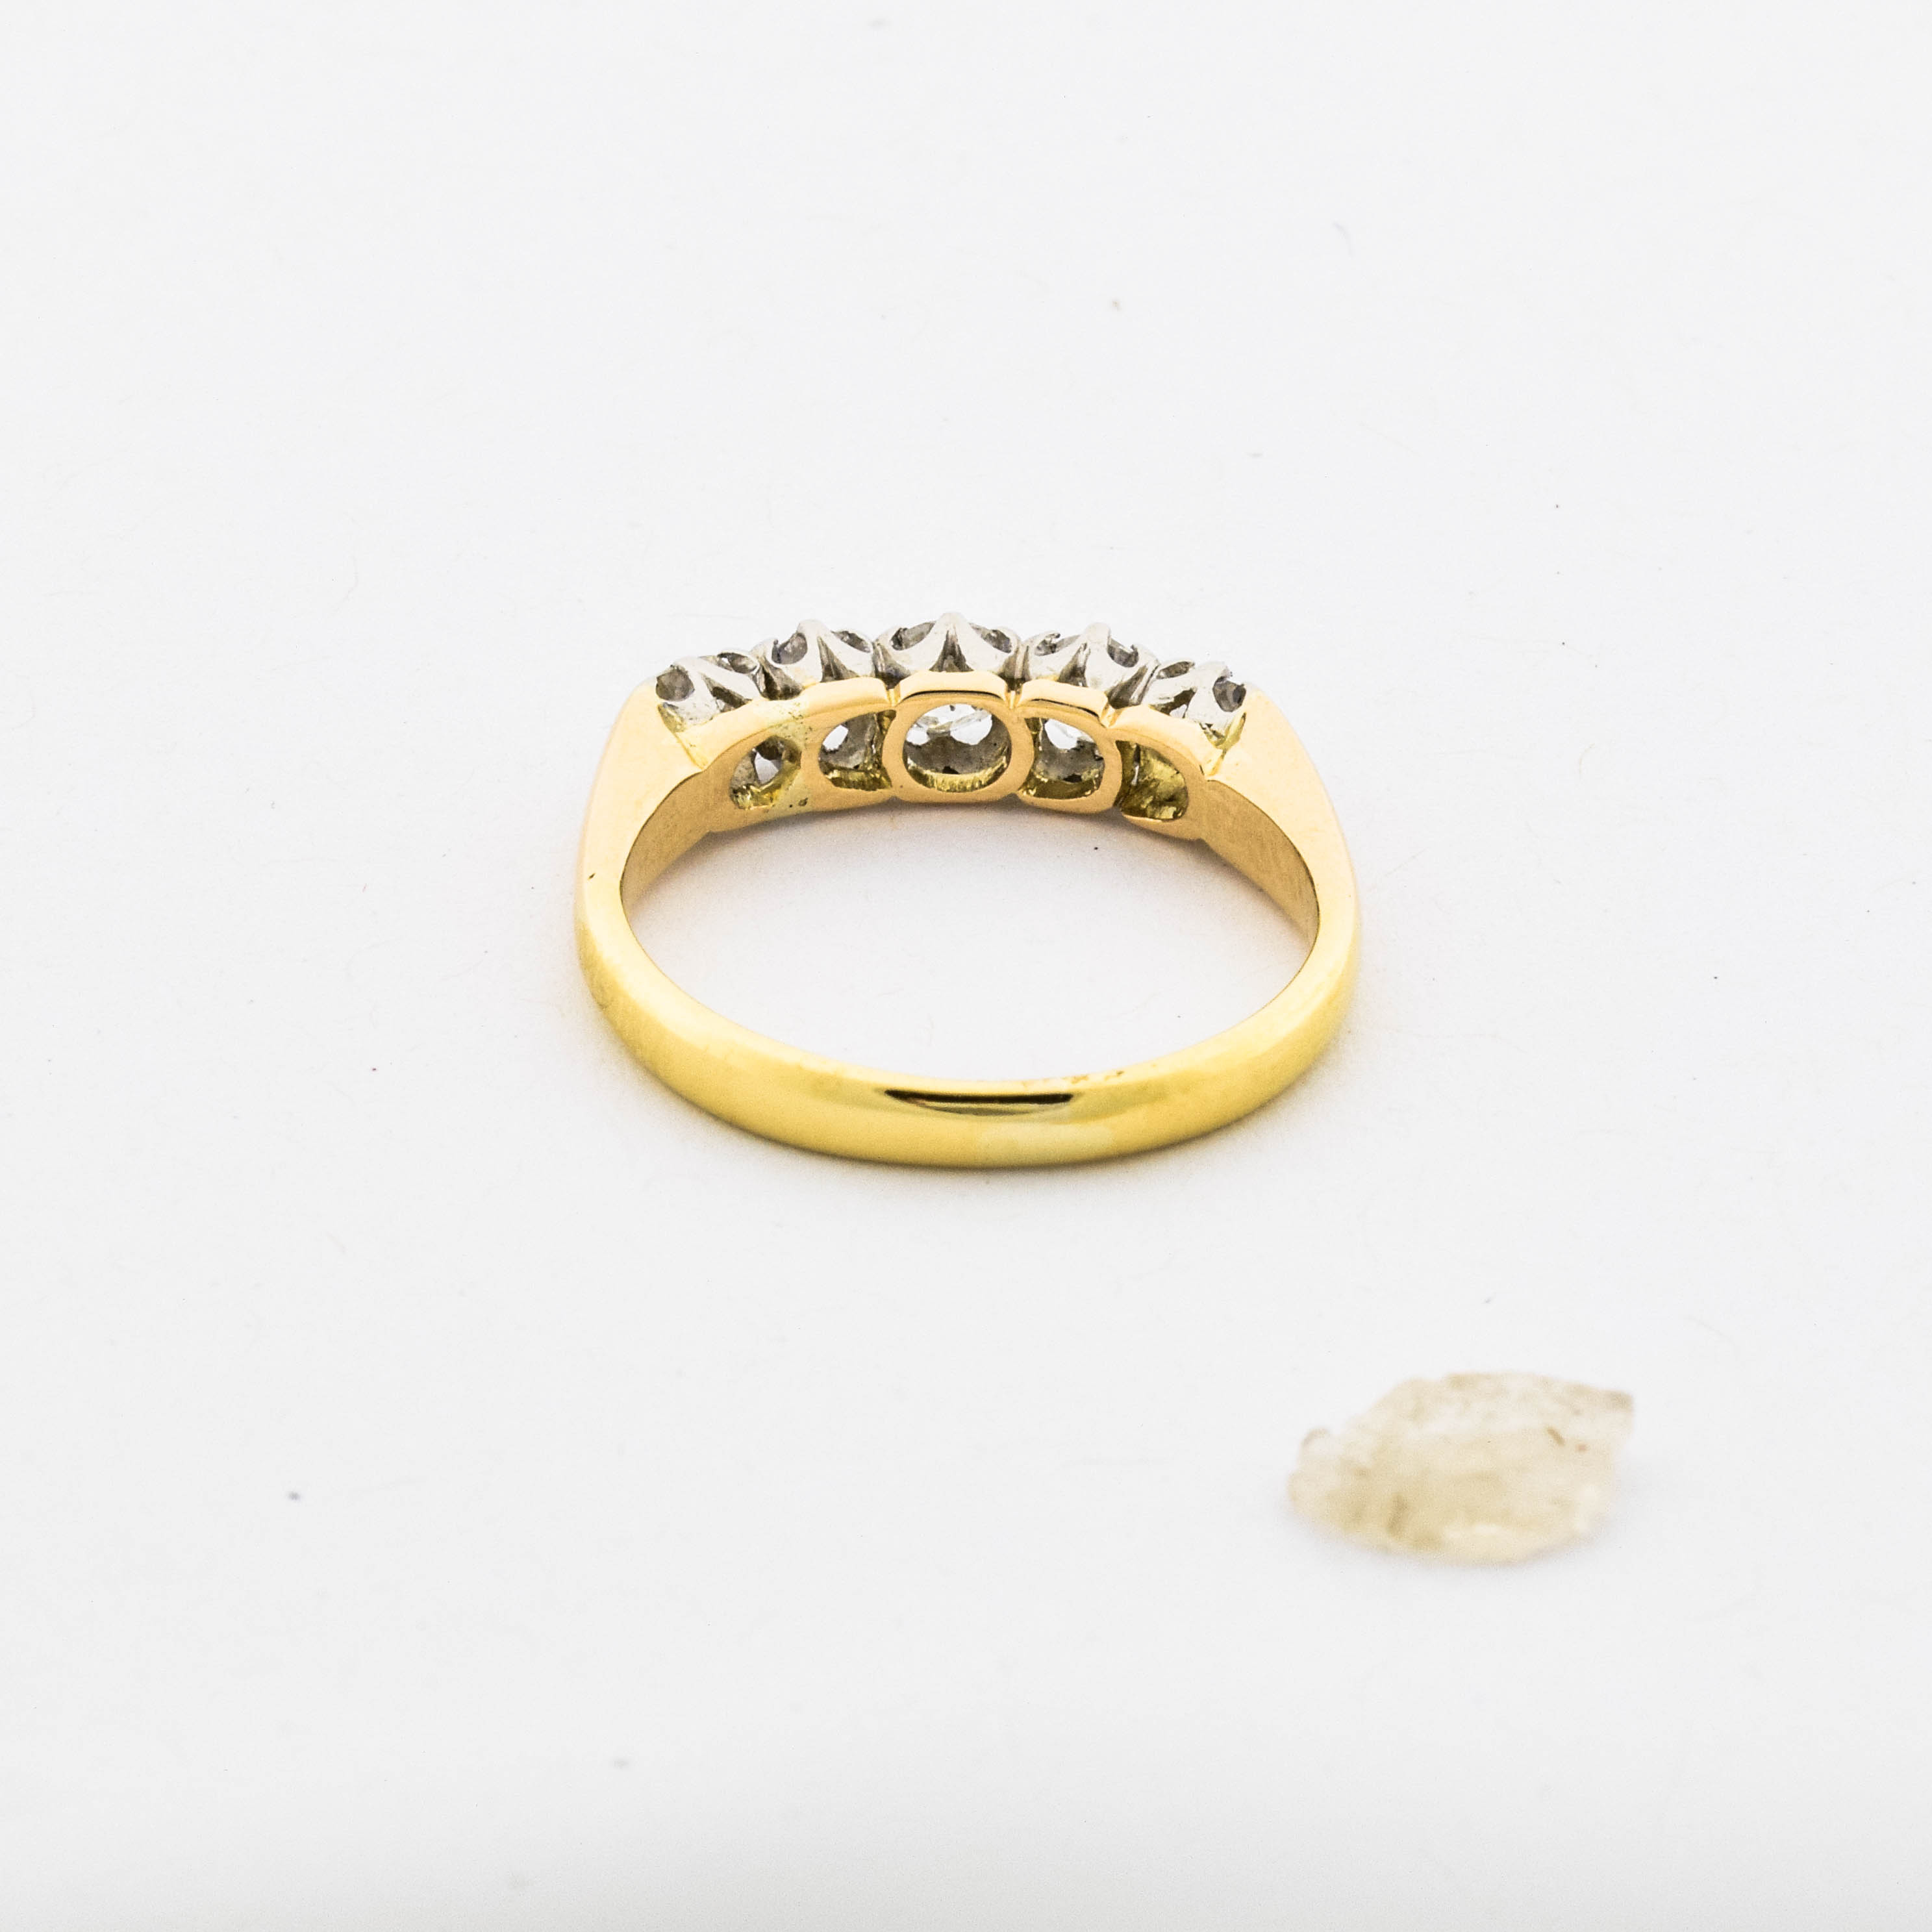 Ring aus 750 Gelb- und Weißgold mit Diamant, nachhaltiger second hand Schmuck perfekt aufgearbeitet